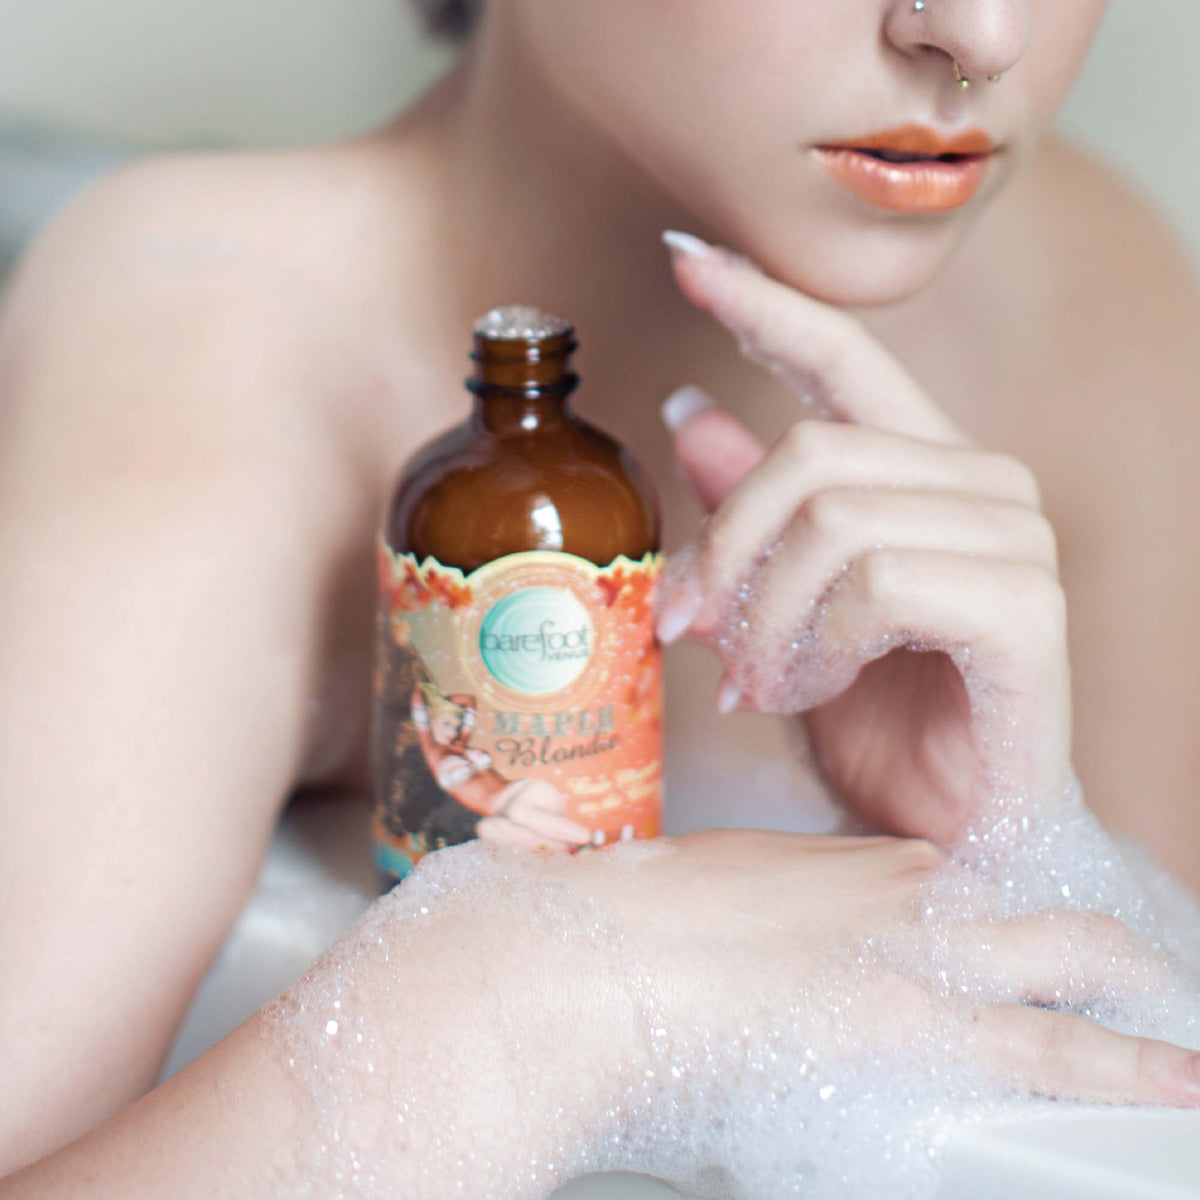 Maple Blondie Bubble Bath SOFT, FRAGRANT BOTANICAL BUBBLES. Barefoot Venus